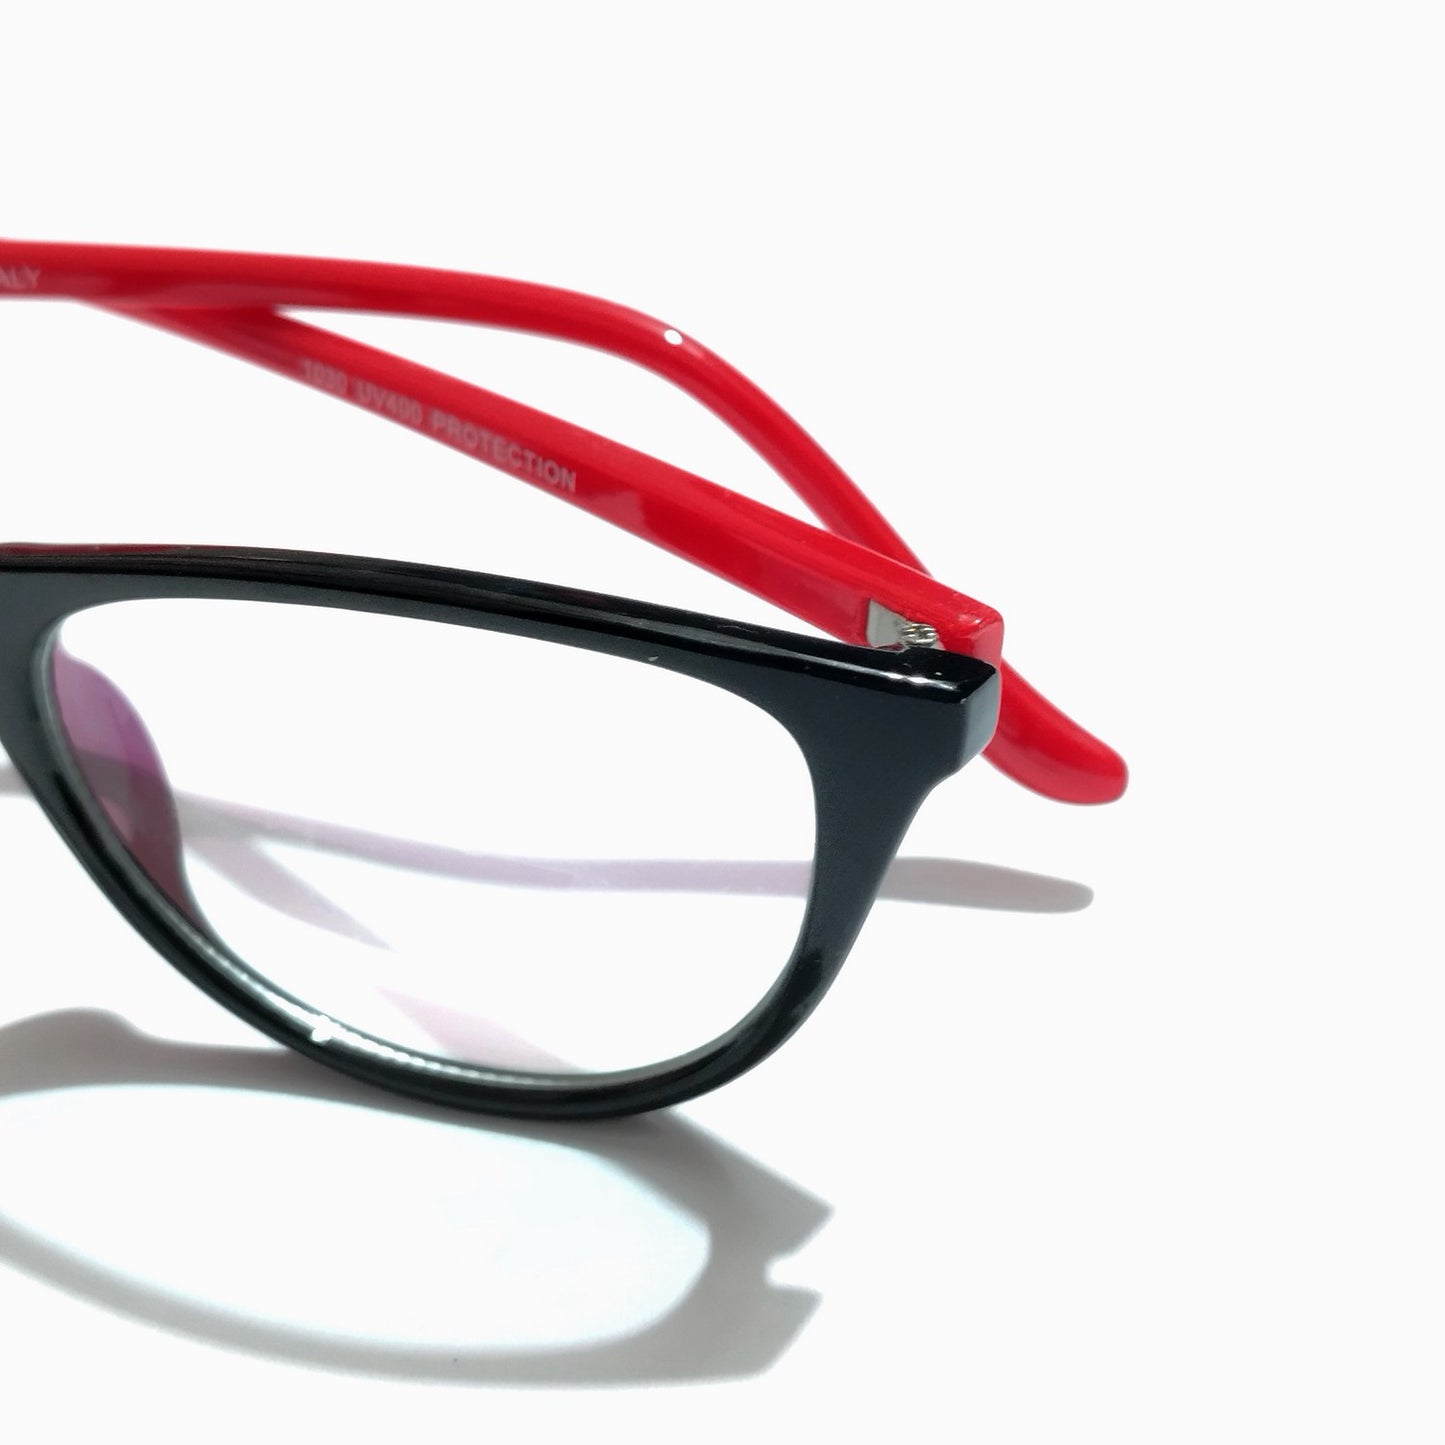 Black Front Red Side Cat Eye Glasses for Women